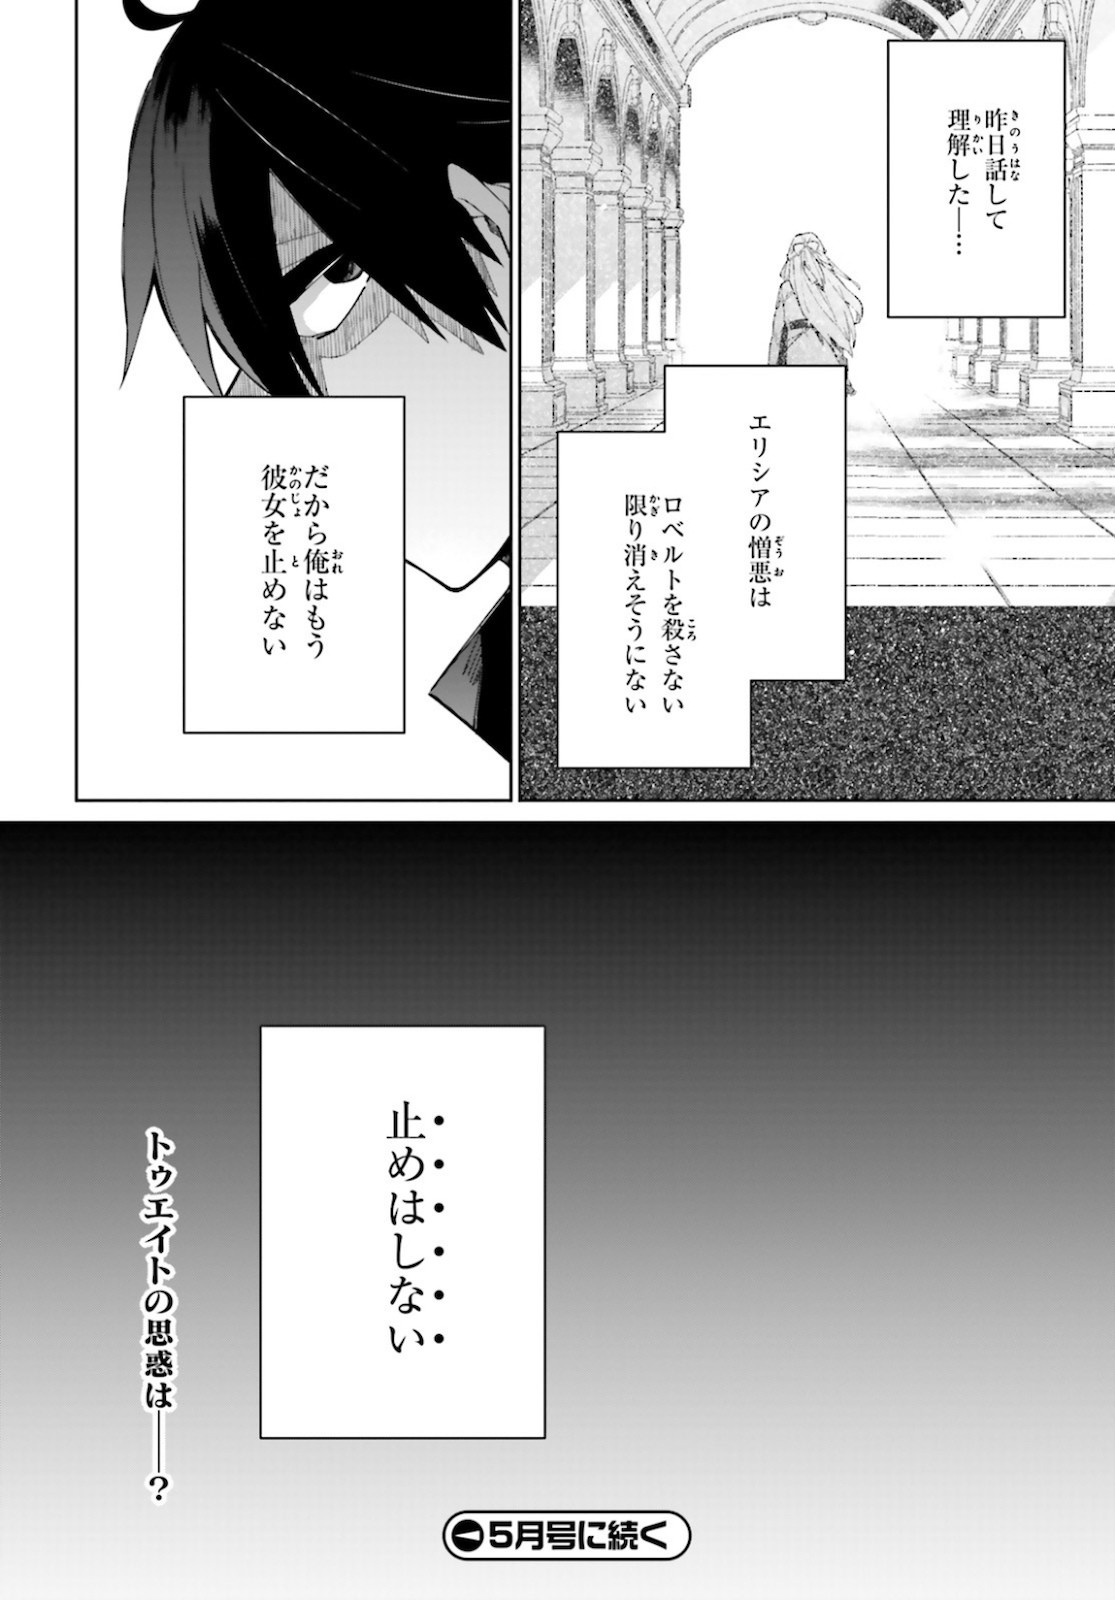 Kage-no-Eiyuu-no-Nichijou-tan-Ichi-no-Yuusha-no-Ura-de-An'yaku-Shite-ita-Saikyou-no-Eijento-Soshiki-ga-Kaitai-sareta-no-de-Shoutai-Kakushite-Hito-nami-no-Nichijou-o-Ouka-suru - Chapter 07 - Page 33